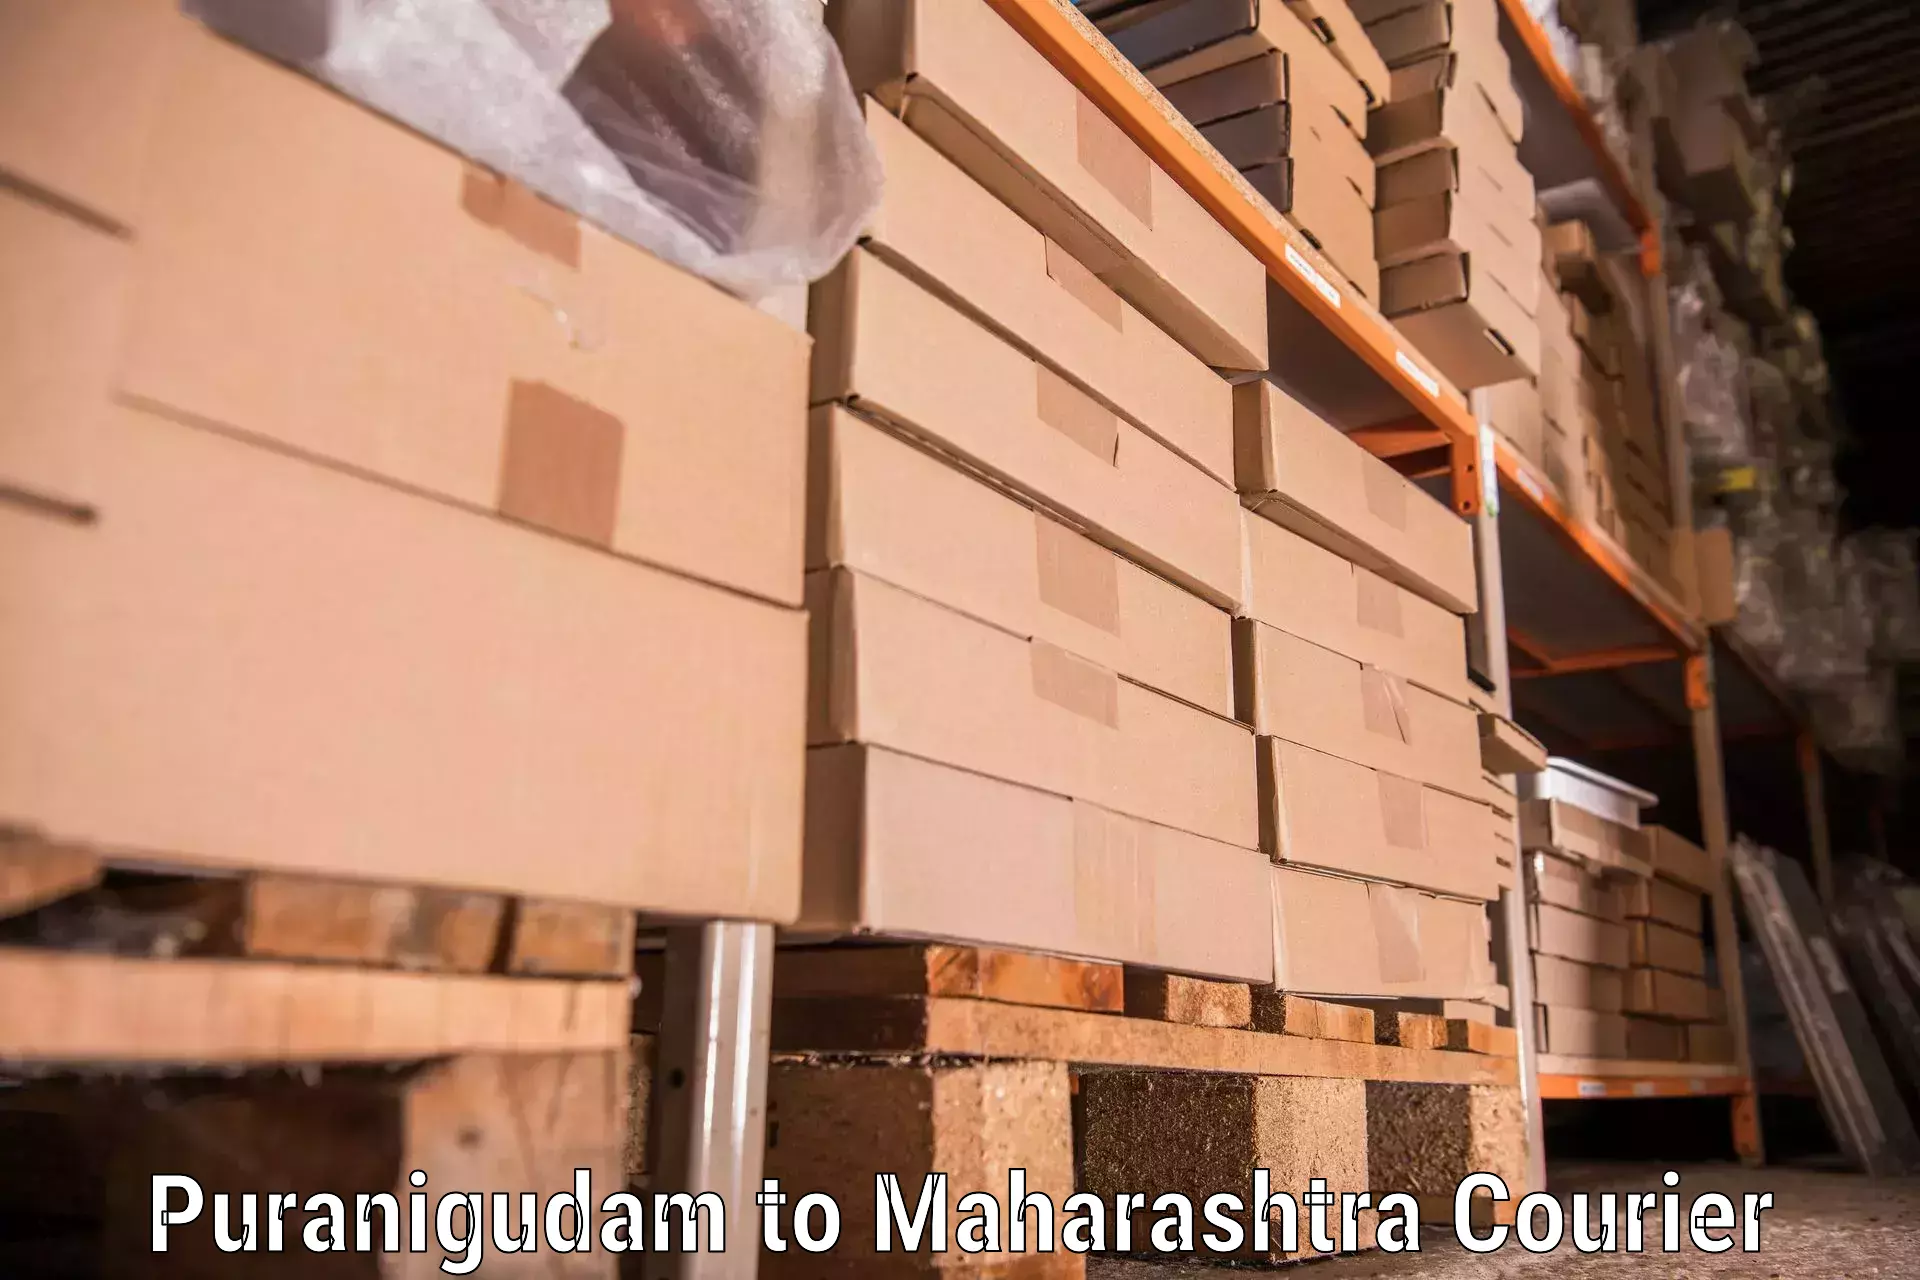 Furniture transport professionals Puranigudam to Sengaon